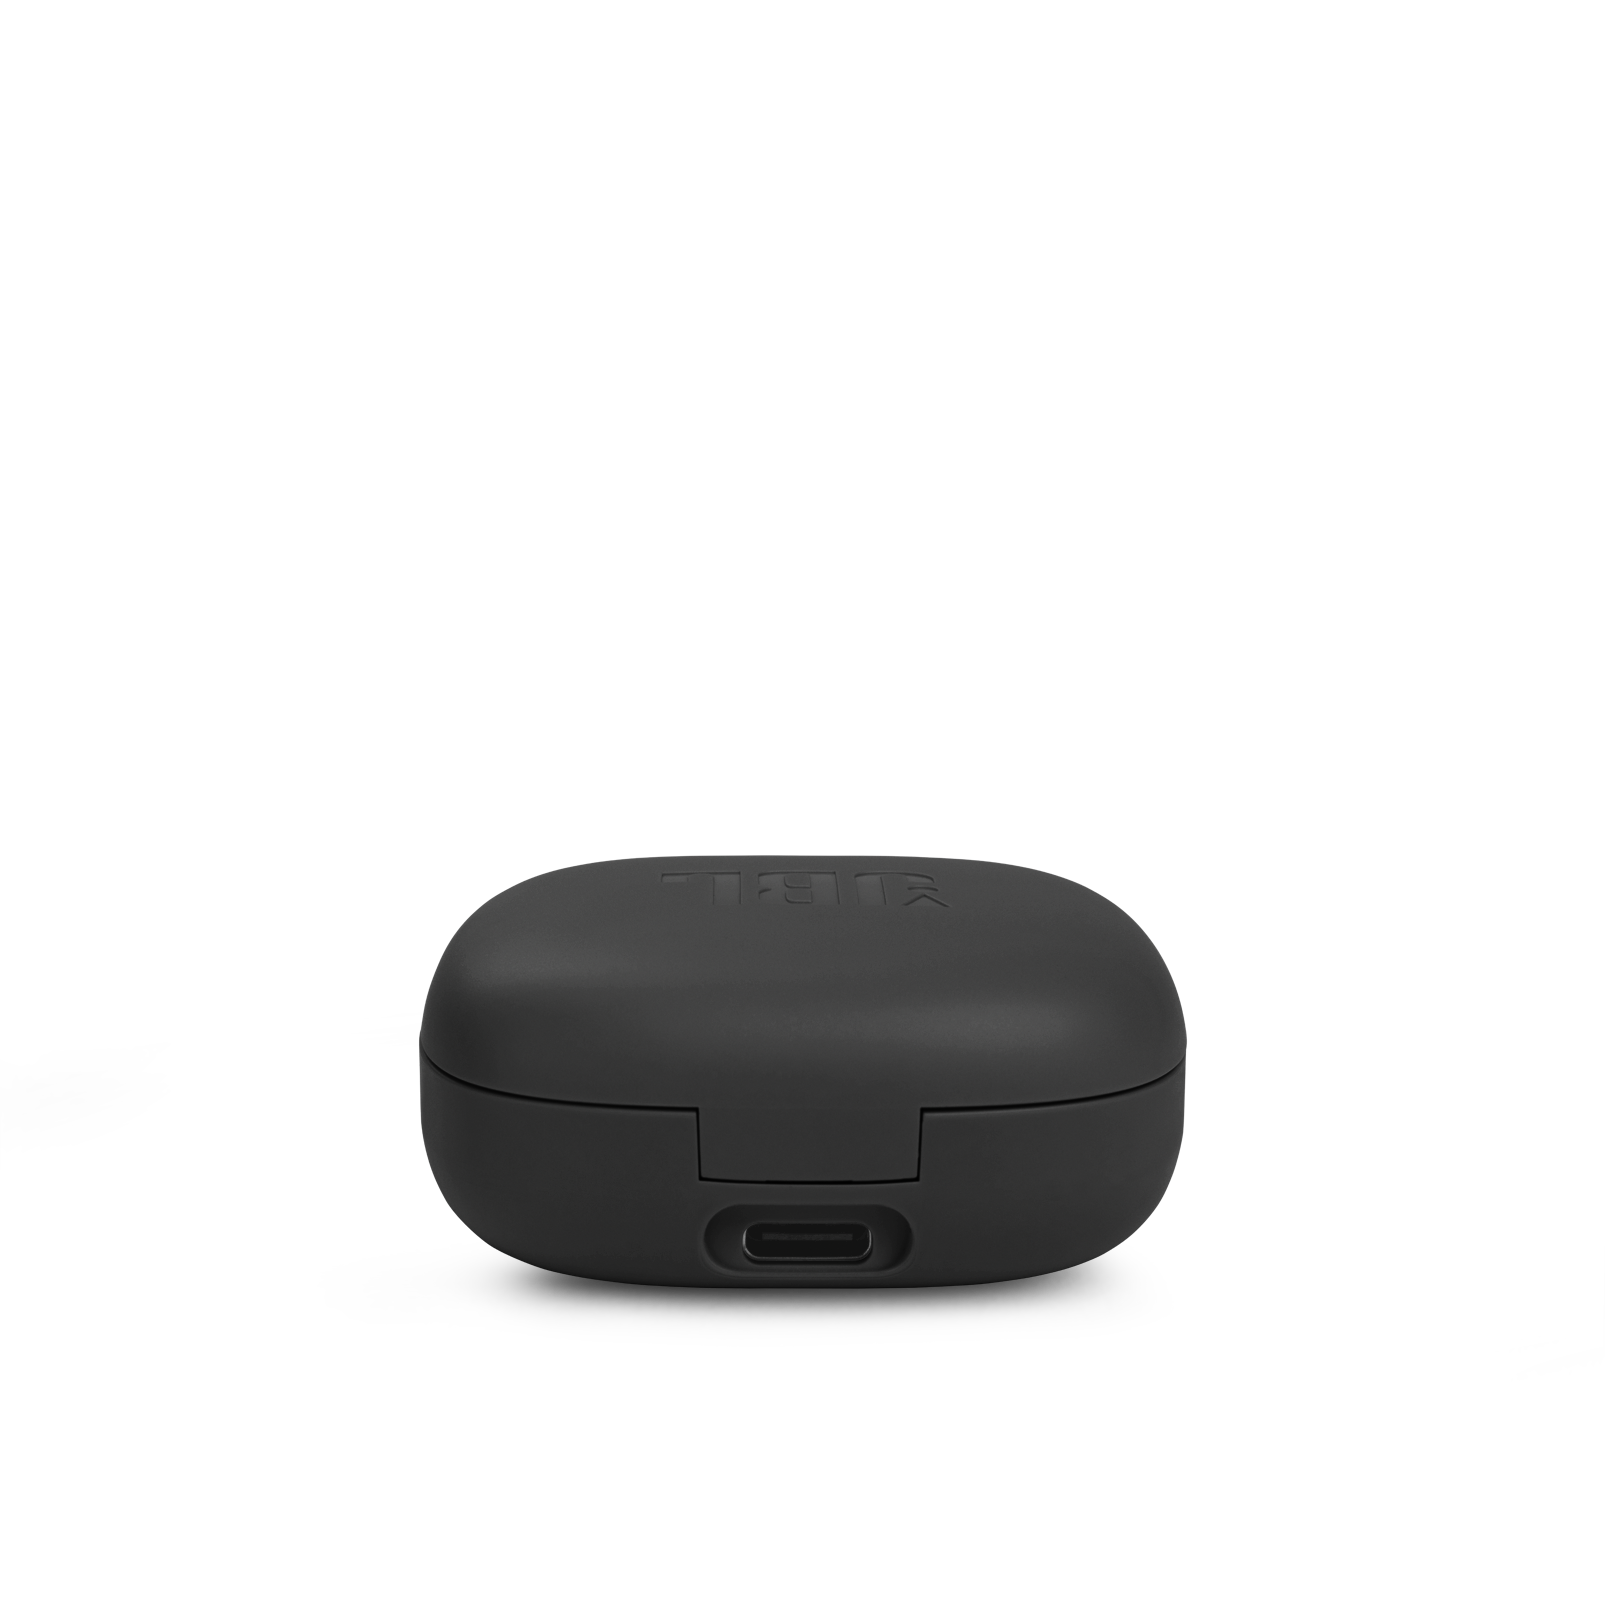 JBL Vibe 300TWS - Black - True wireless earbuds - Detailshot 2